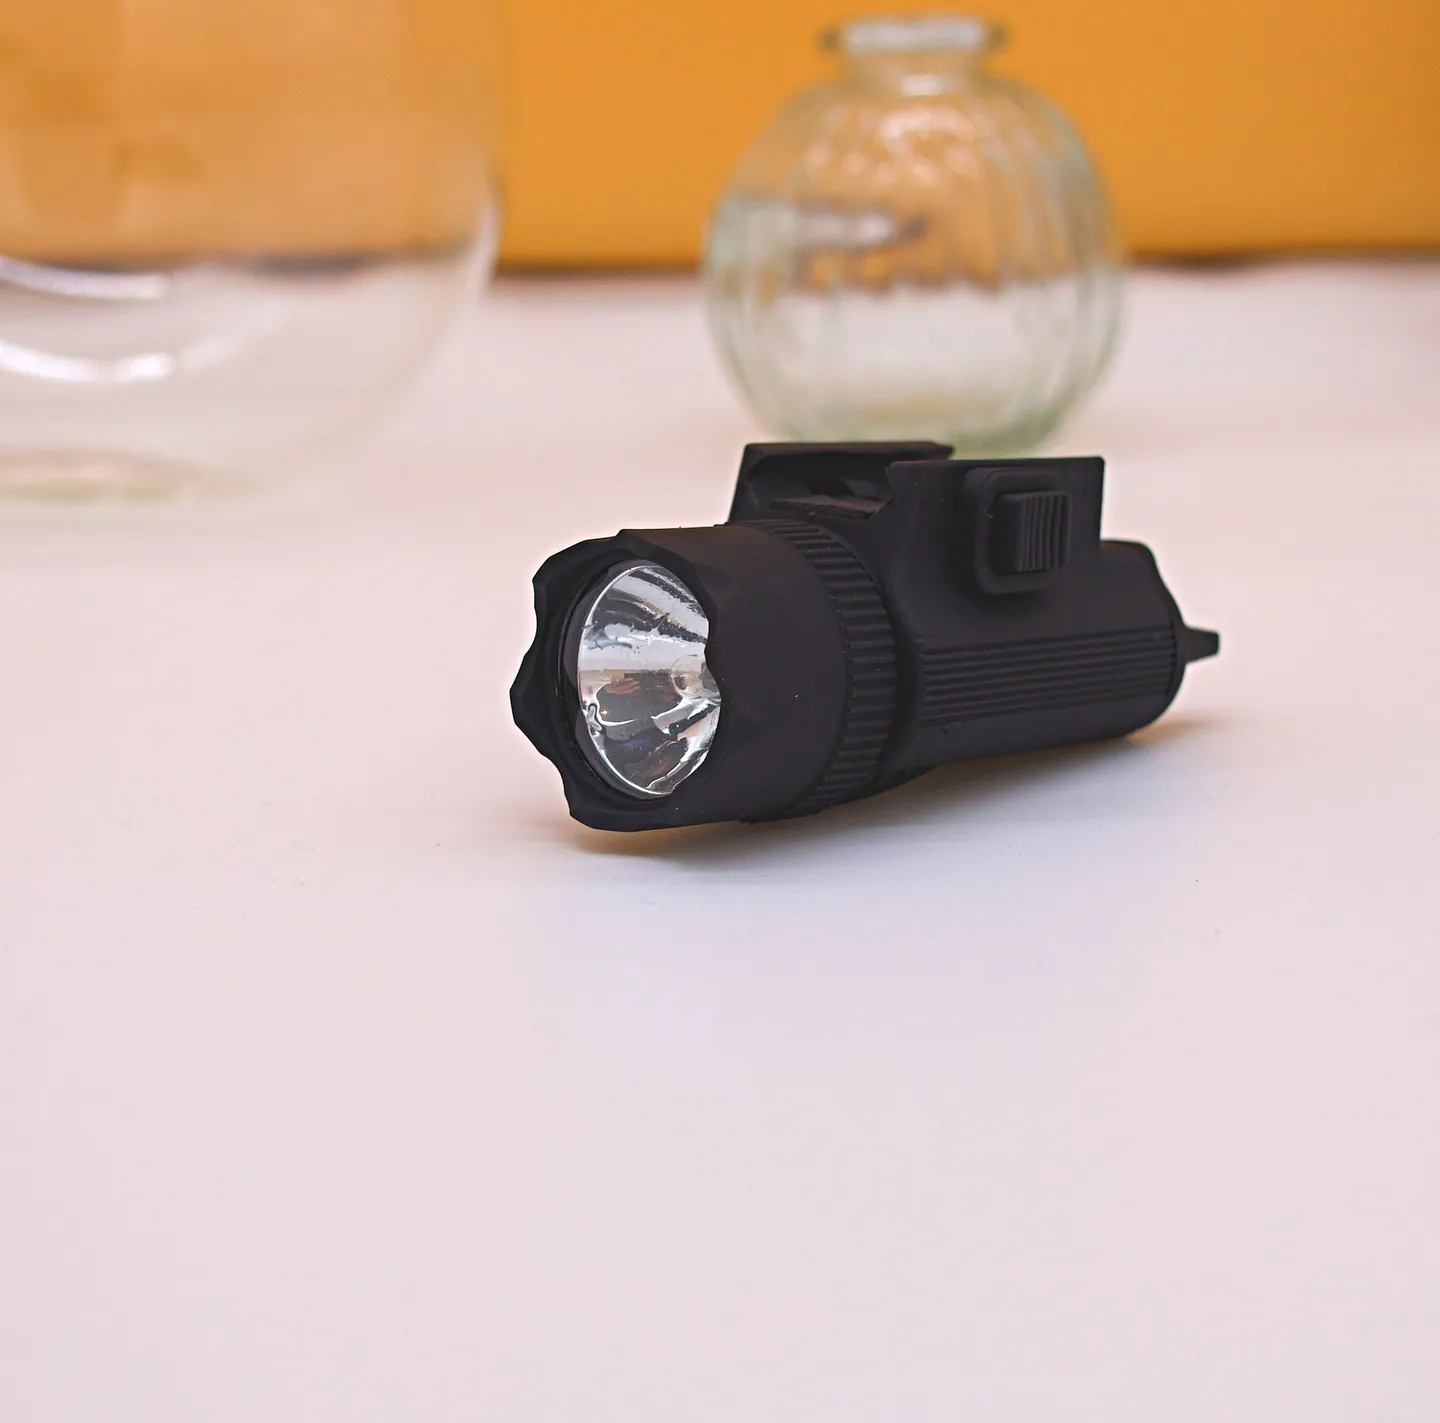 Zubehör und Ausrüstung - Taktische Super Xenon Taschenlampe: Das wesentliche Werkzeug zur Erkennung potenzieller Bedrohungen.